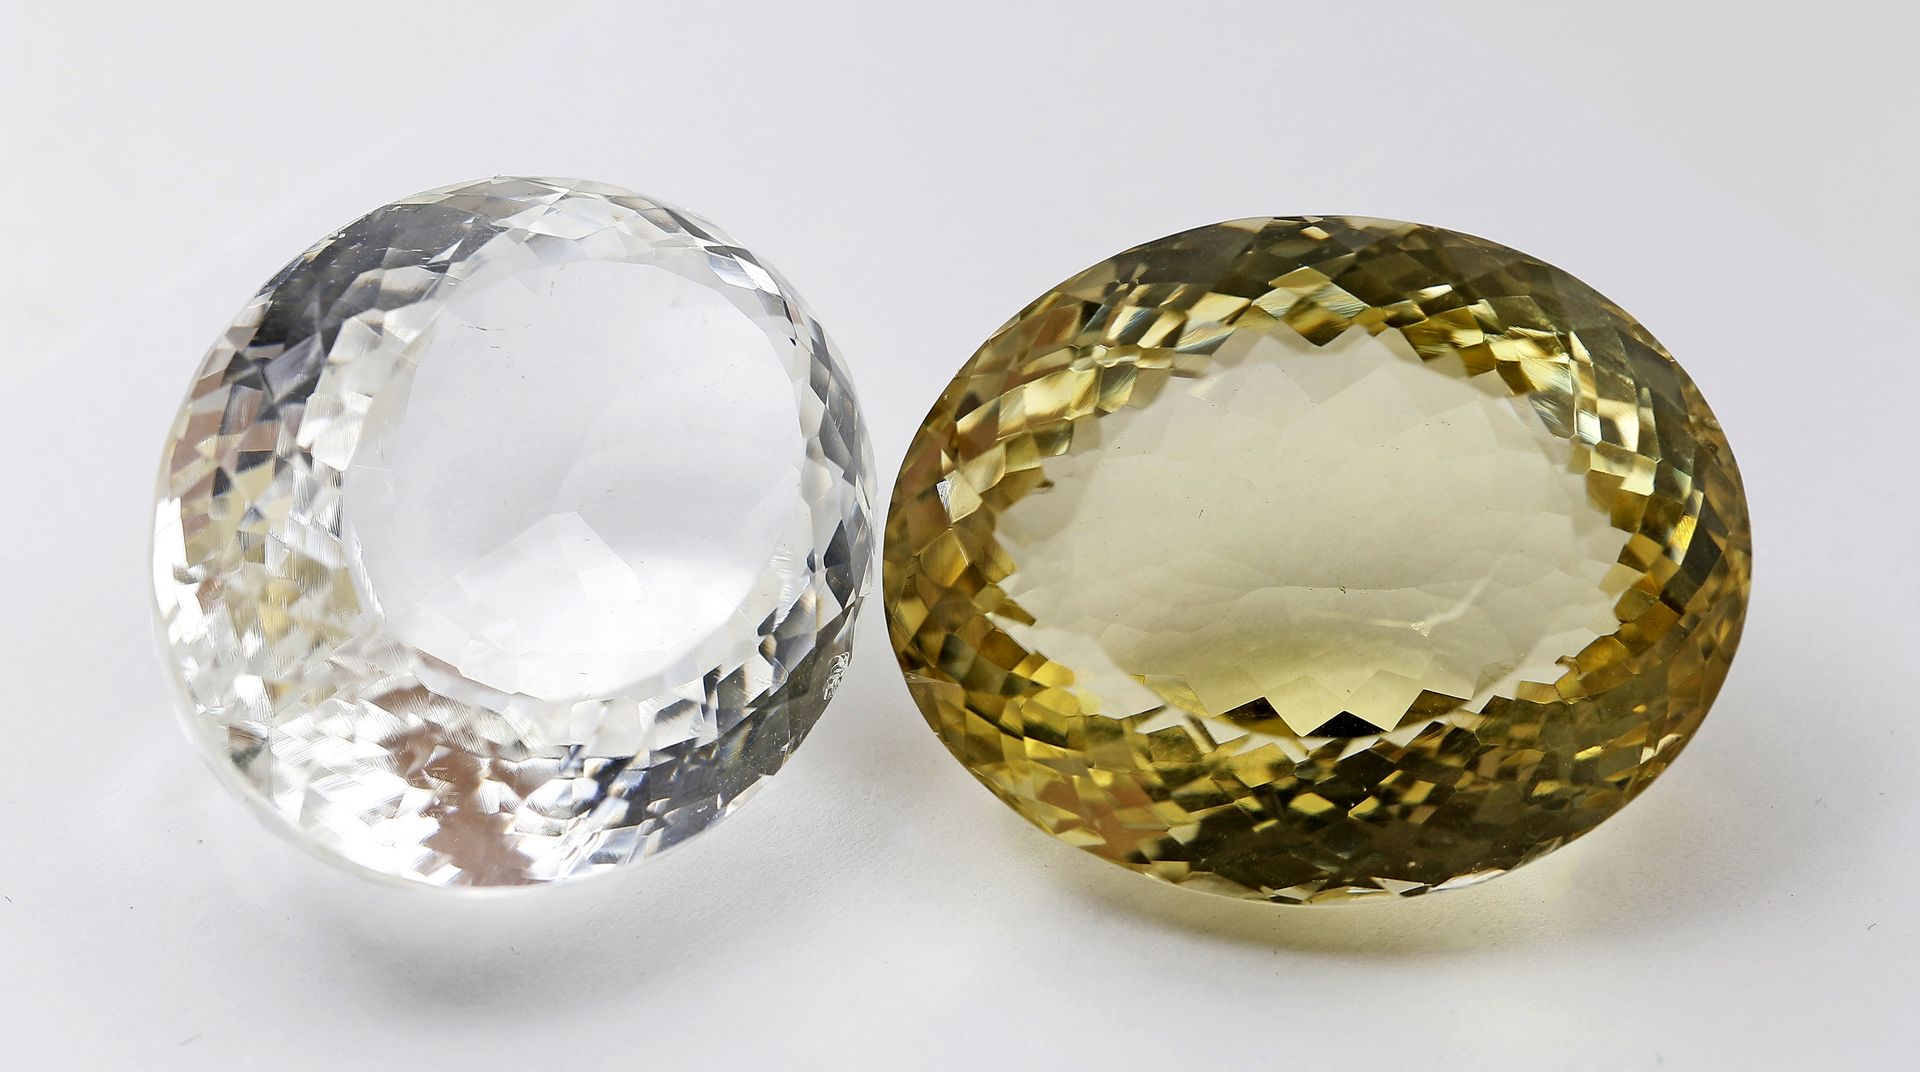 Bergkristall und Lemon-Citrin, zus. ca. 190 ct.